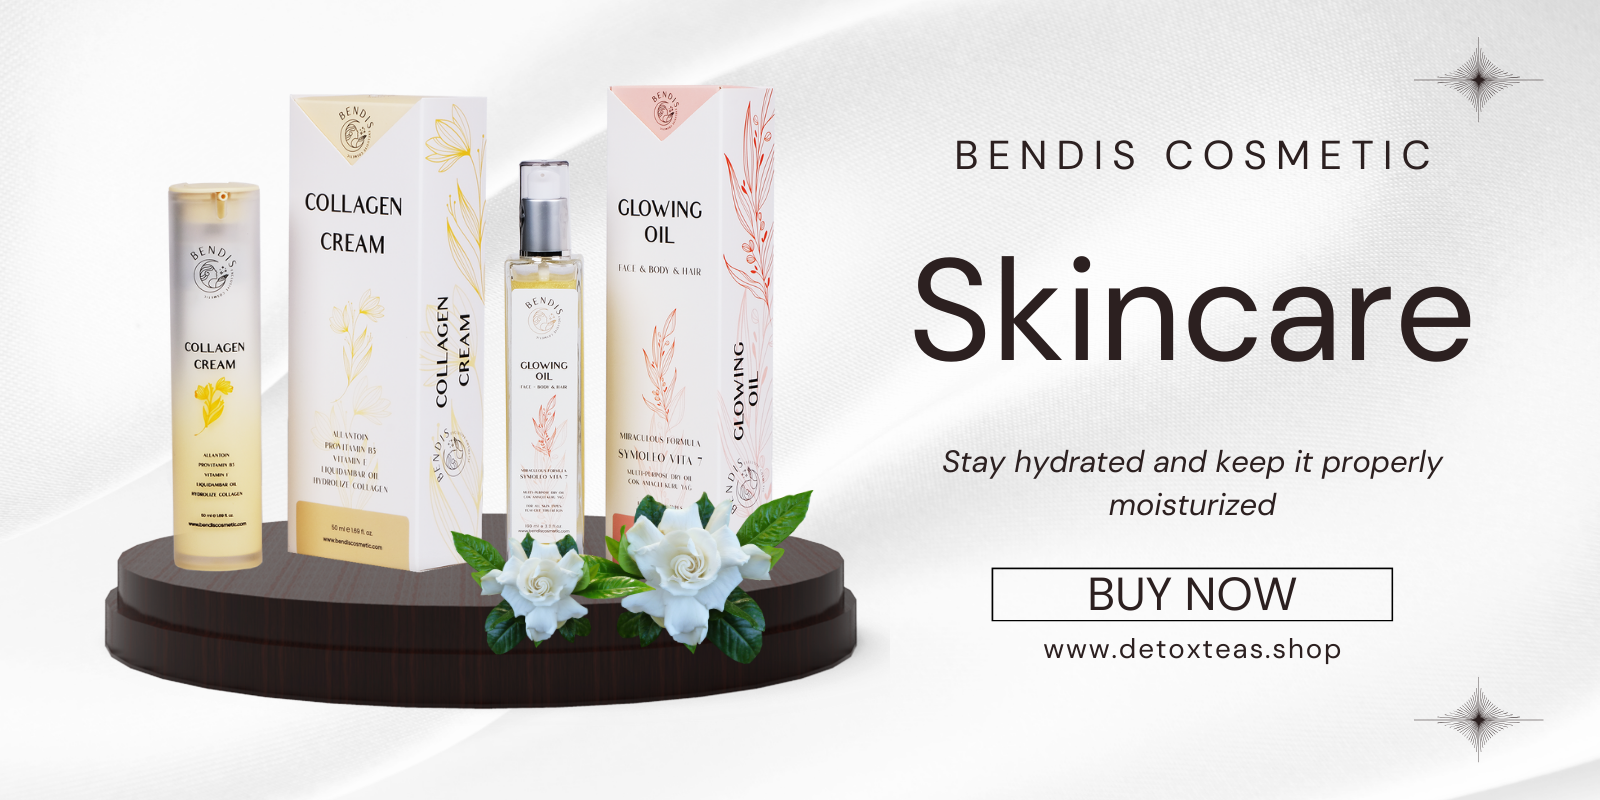 bendis-cosmetic-homepage-grid